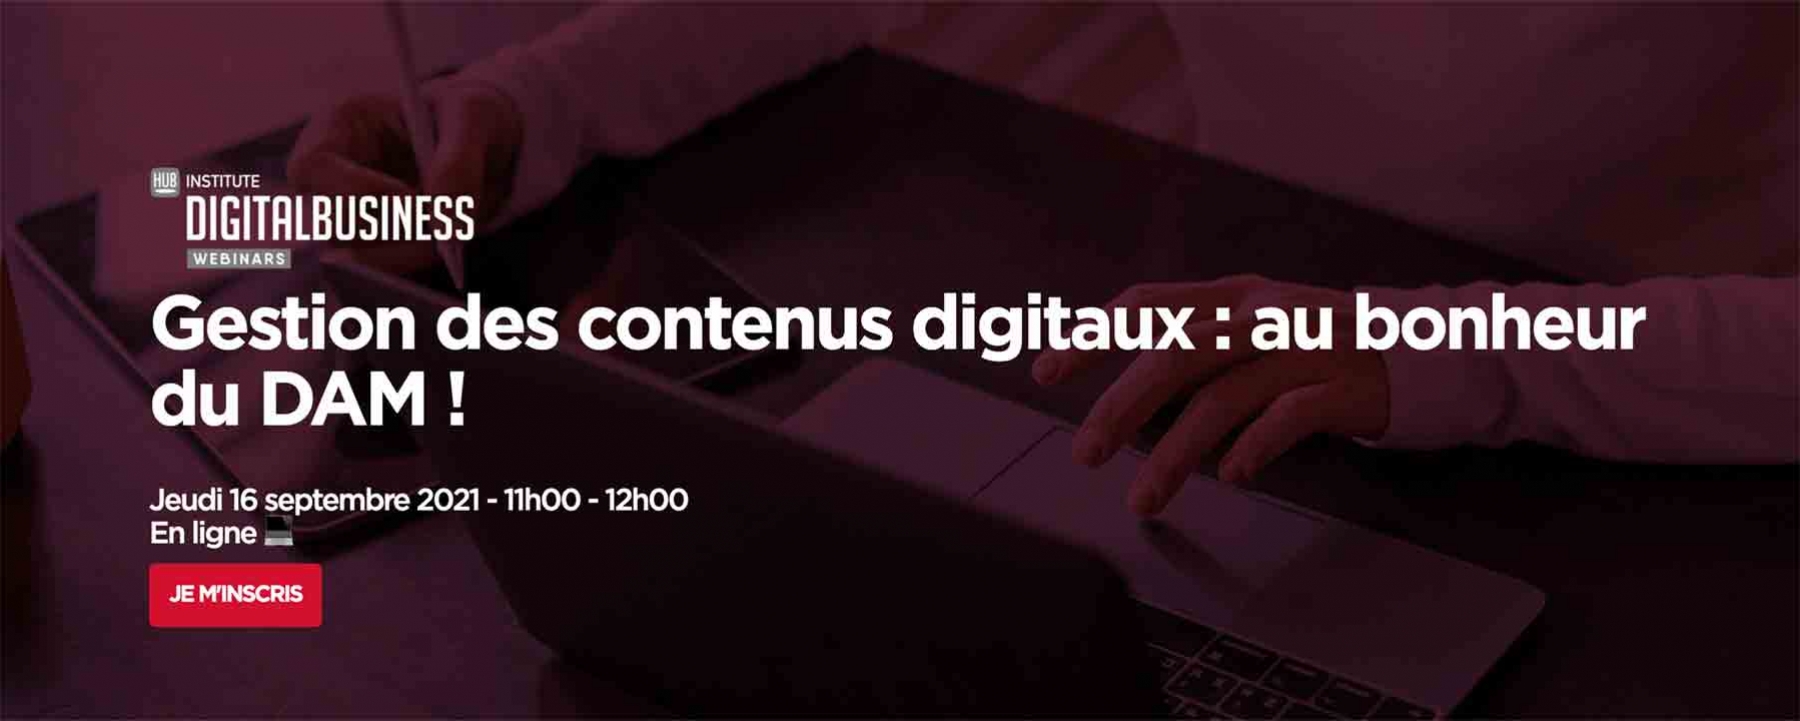 Gestion des contenus digitaux : au bonheur du DAM ! le 16 septembre 2021 en ligne